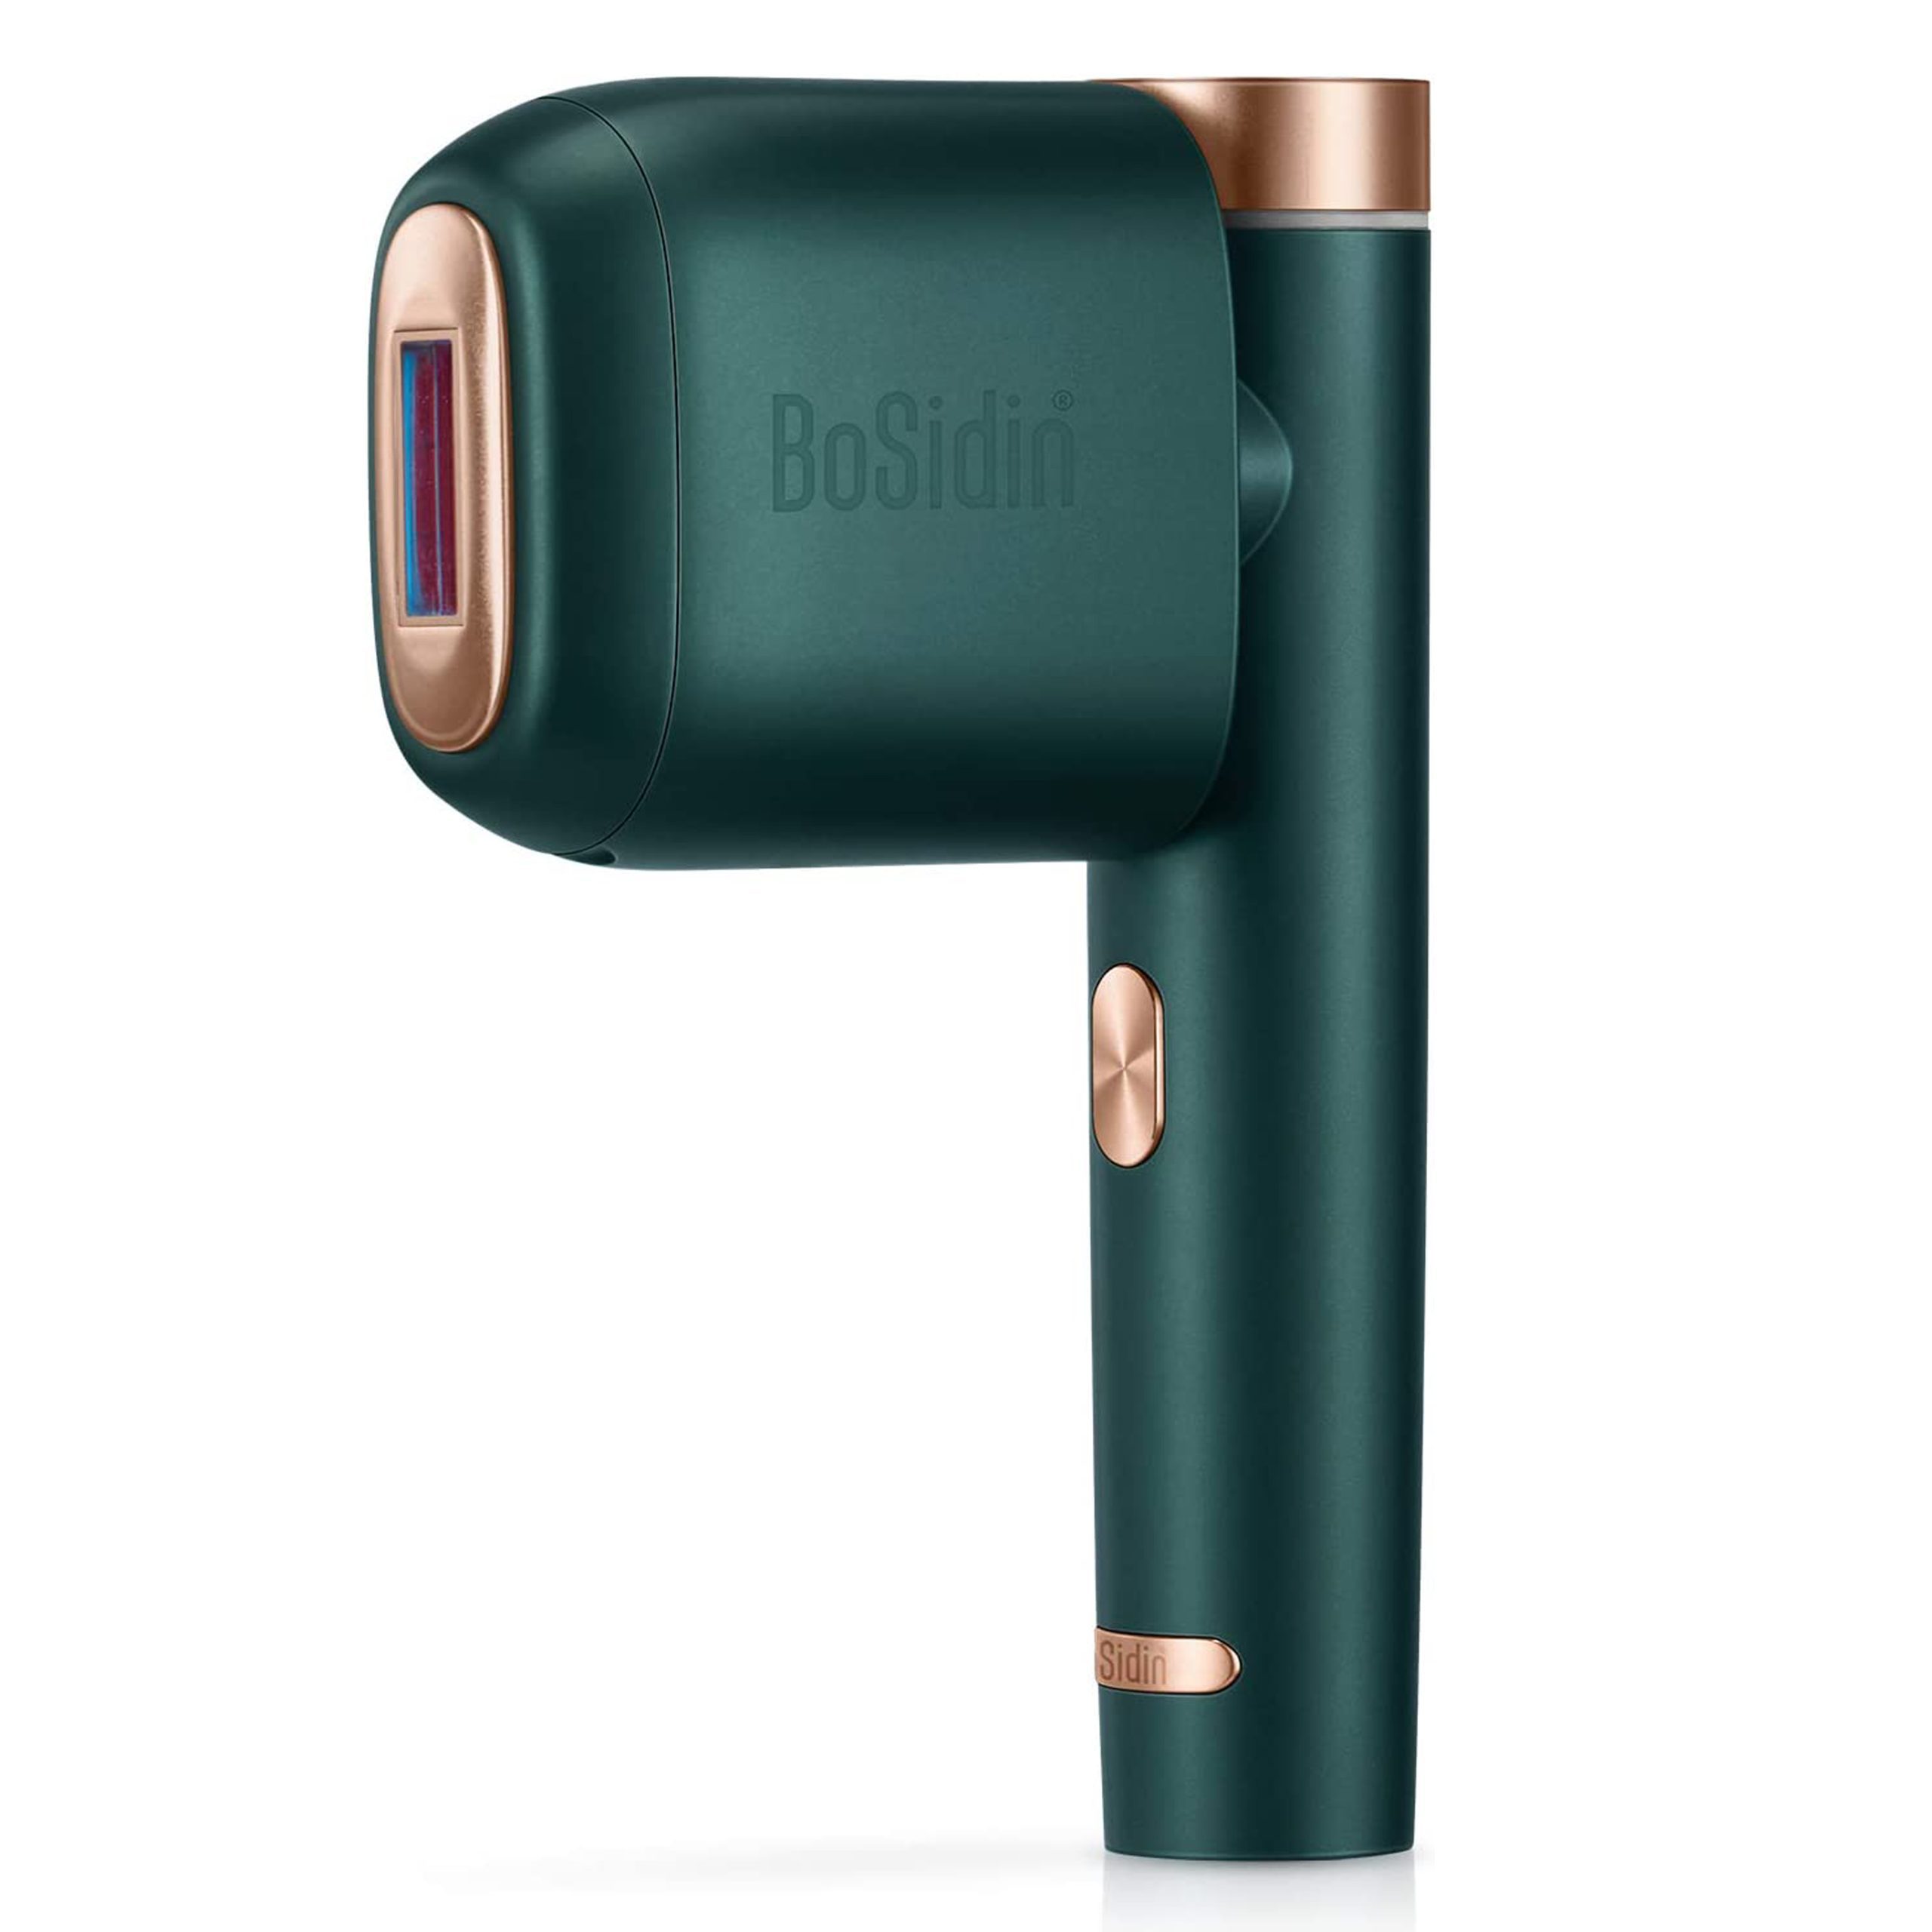 دستگاه لیزر موهای زائد دائمی BoSidin Painless Permanent Hair Removal Device